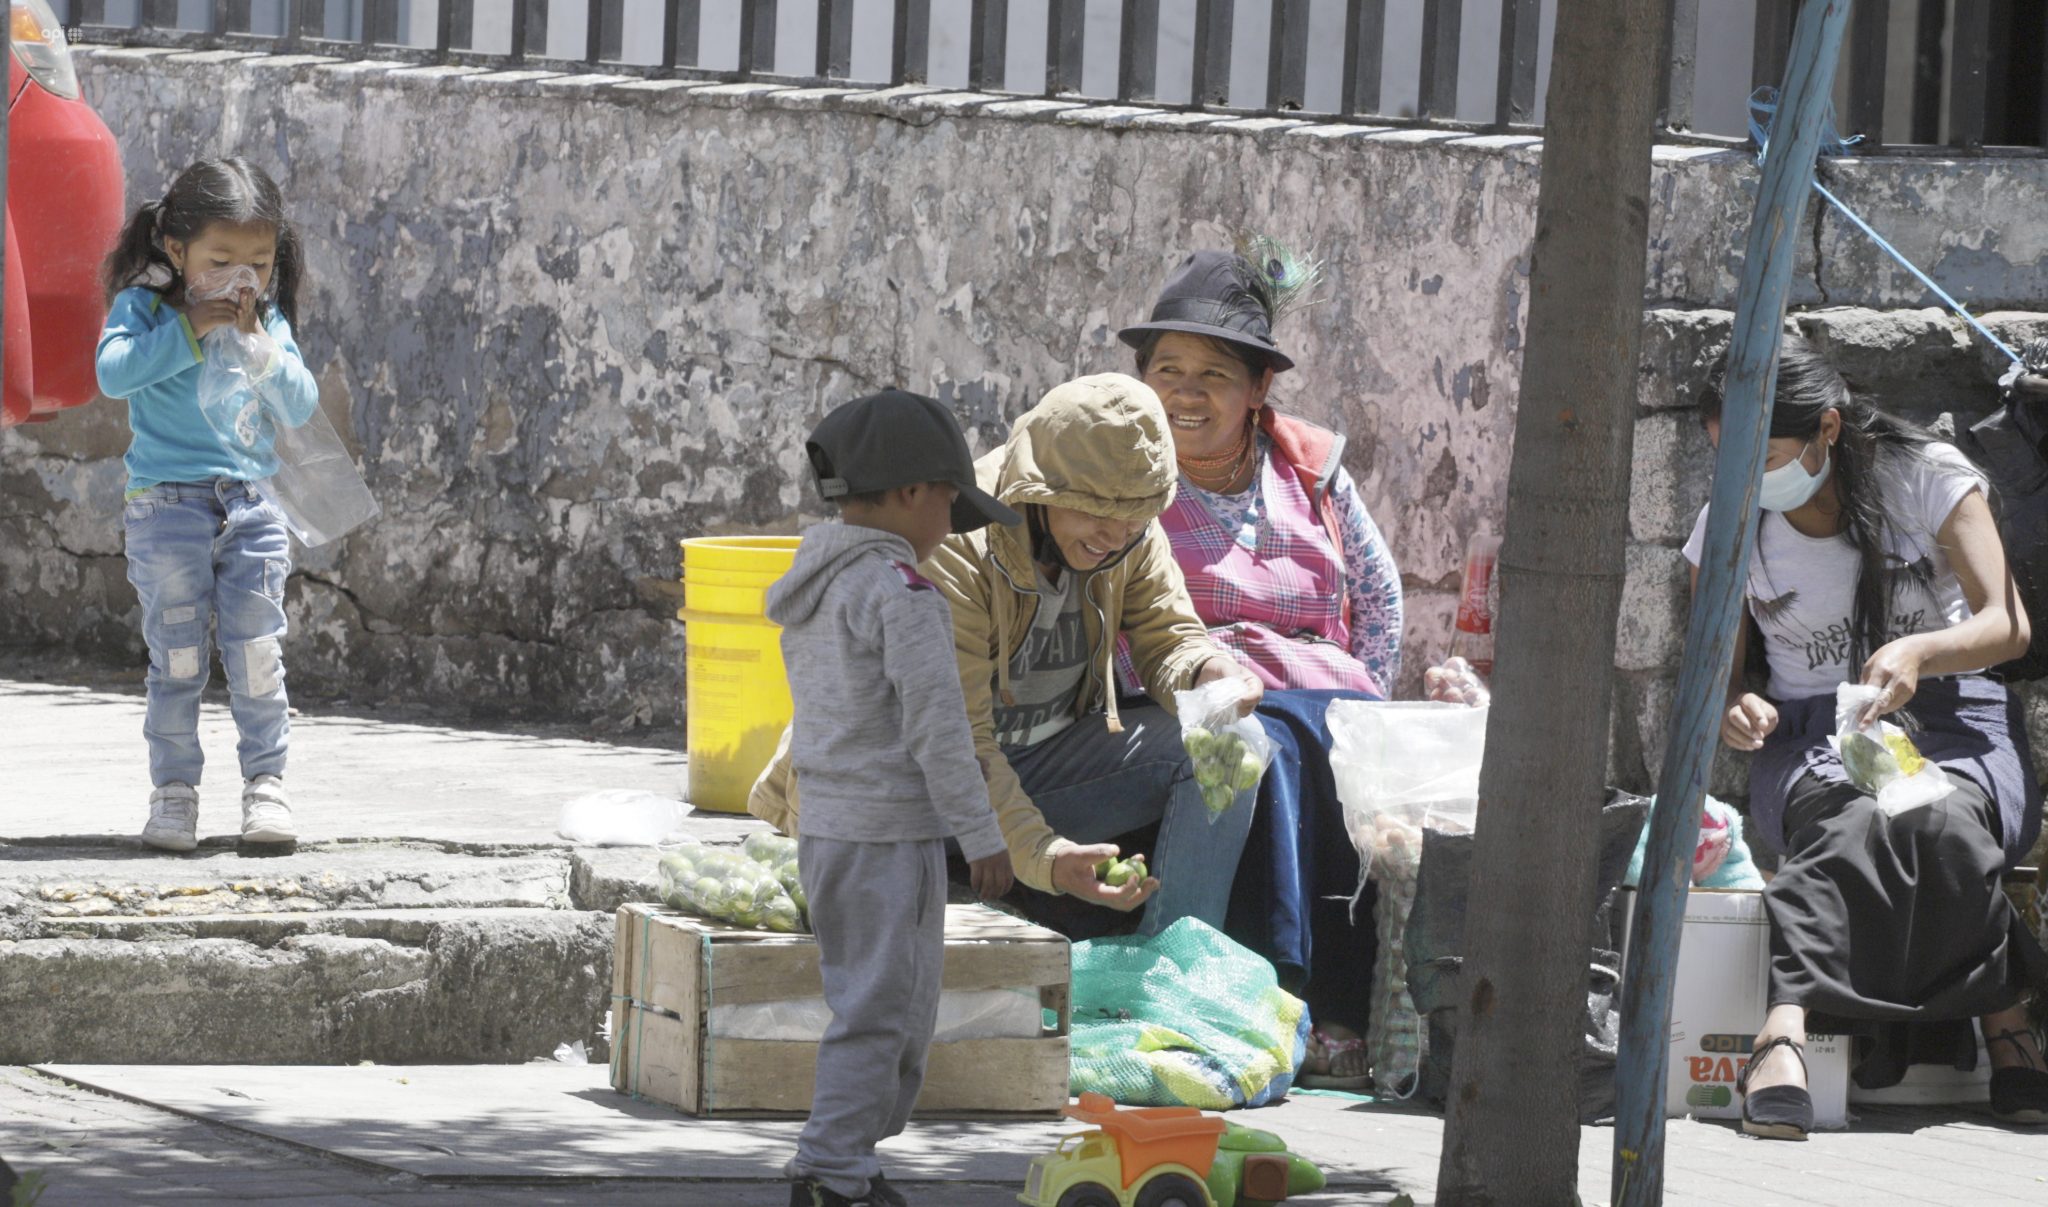 DEMOGRAFÍA. Los niños, niñas y adolescentes representan el 34% de la población ecuatoriana.